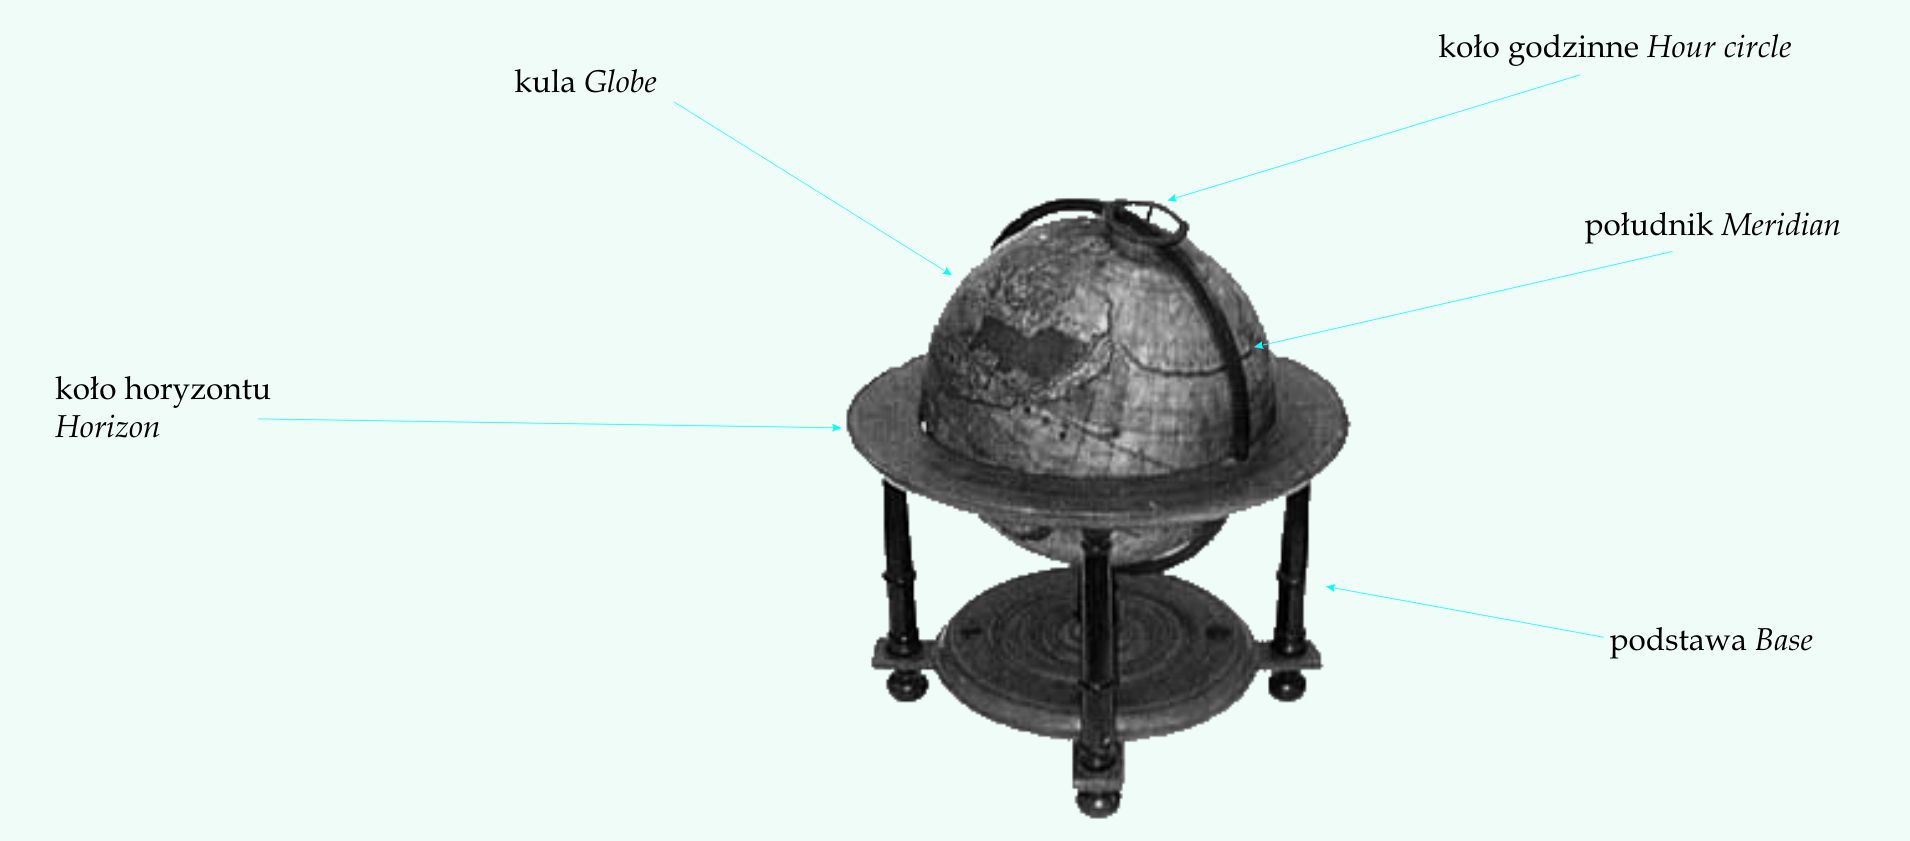 budowa globusa: kula, koło horyzontu, koło godzinne południk, podstawa (baza)